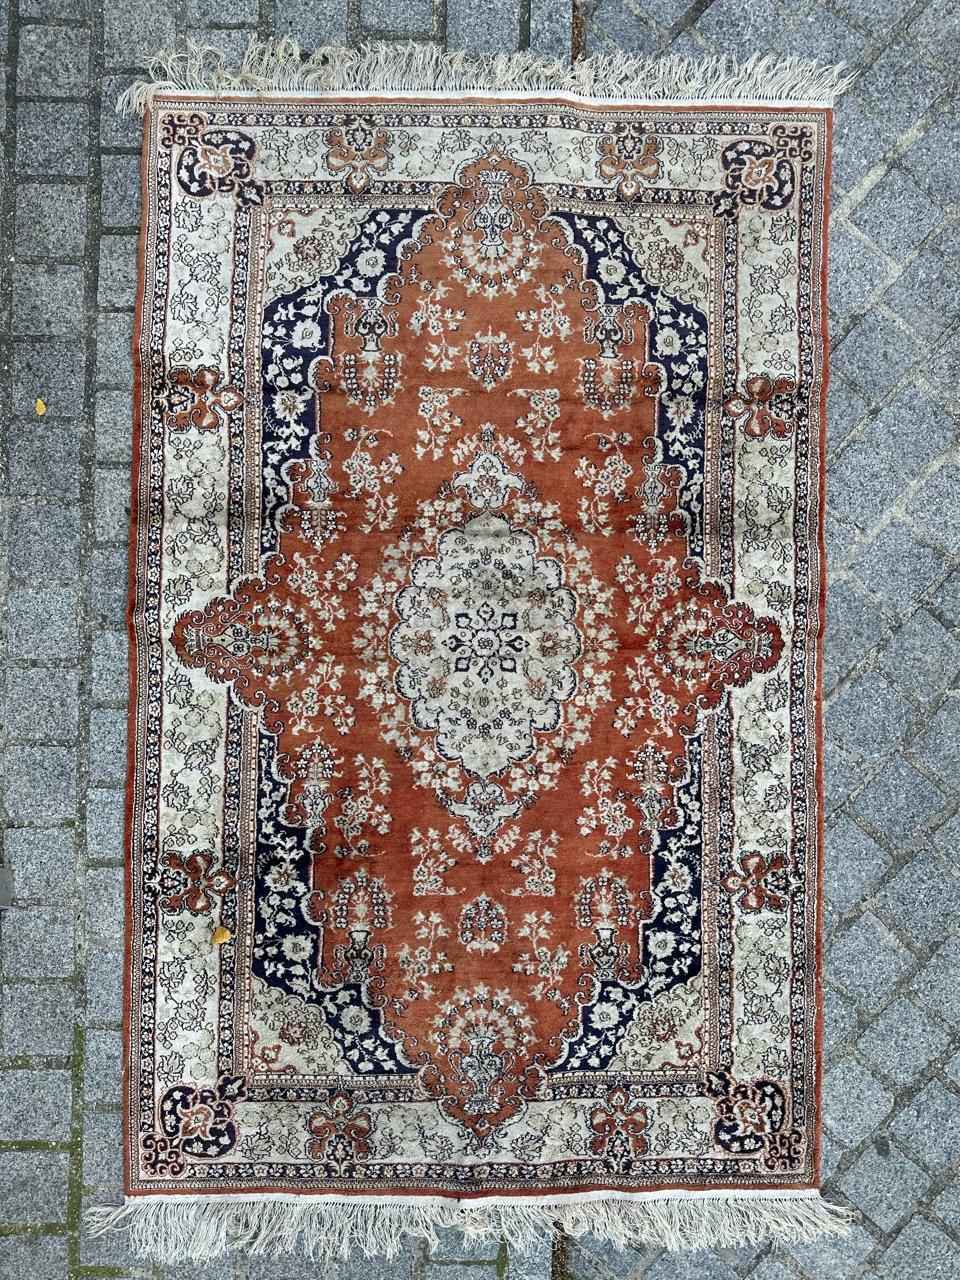 Wunderschöner Vintage-Seidenteppich im Stil der persischen Qom-Teppiche, in China sorgfältig handgeknüpft. Dieses exquisite Stück zeichnet sich durch komplizierte, handgewebte Blumenmuster in schönen Farben aus. Das orangefarbene Feld ist mit einem